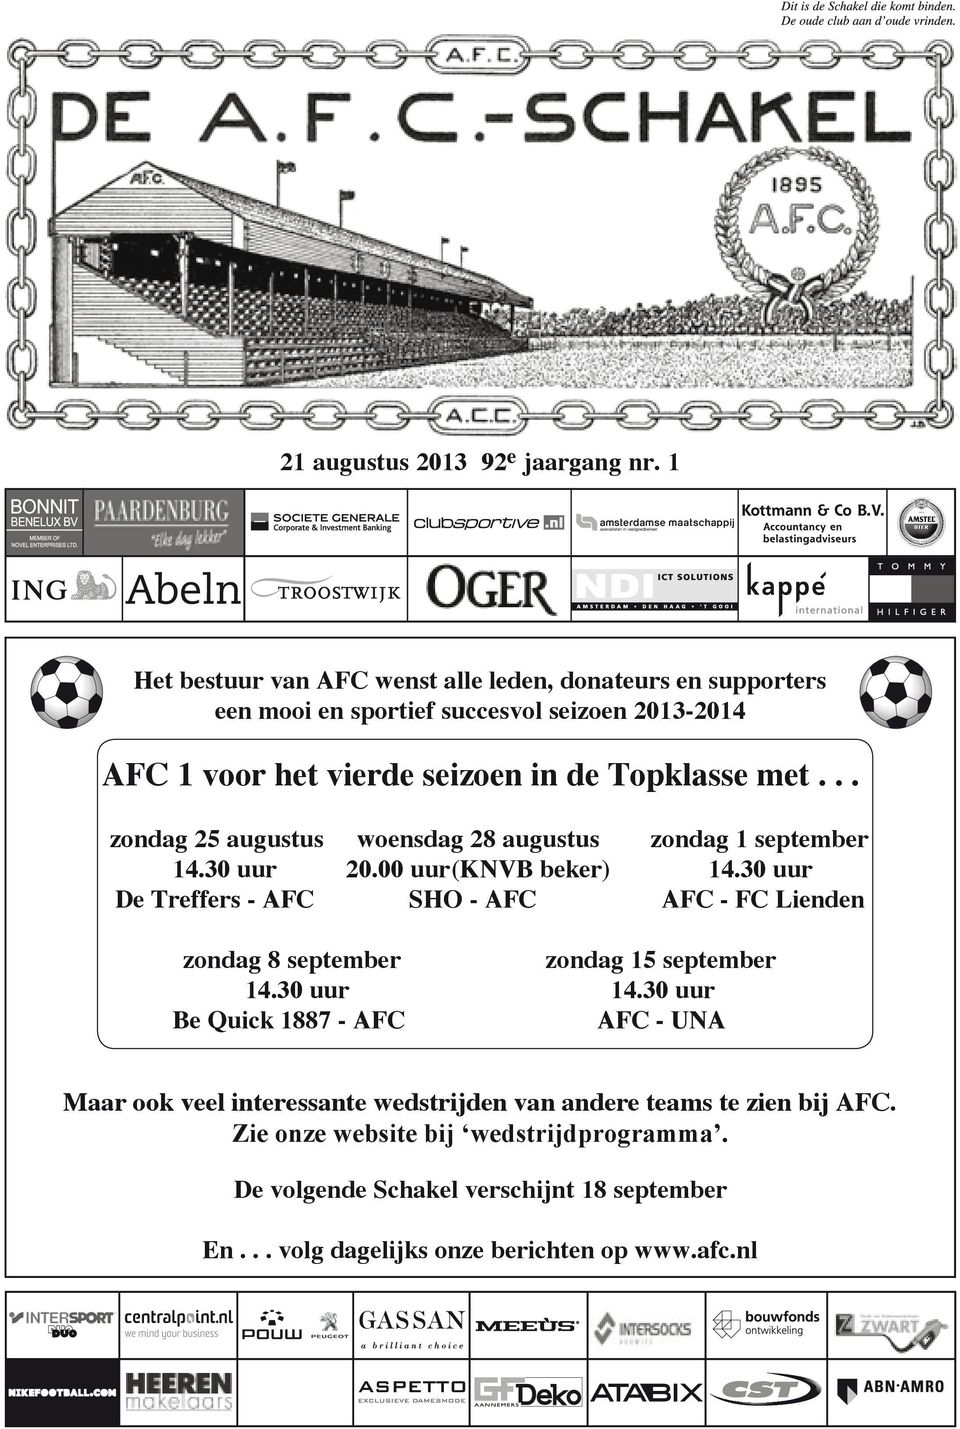 30 uur De Treffers - AFC SHO - AFC AFC - FC Lienden zondag 8 zondag september 8 september zondag 15 september 14.30 uur 14.